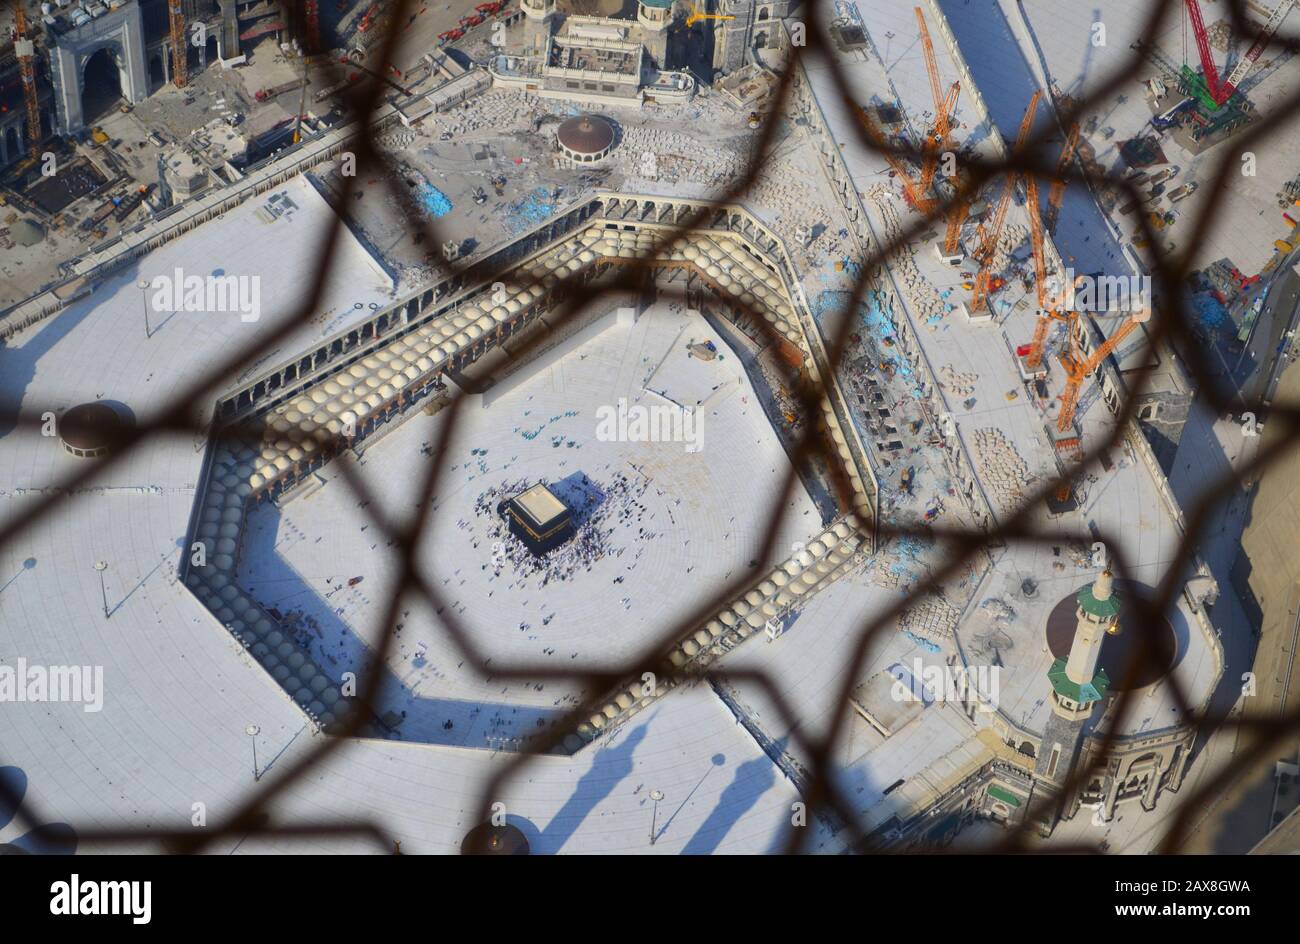 Vista aérea de la Meca Foto de stock